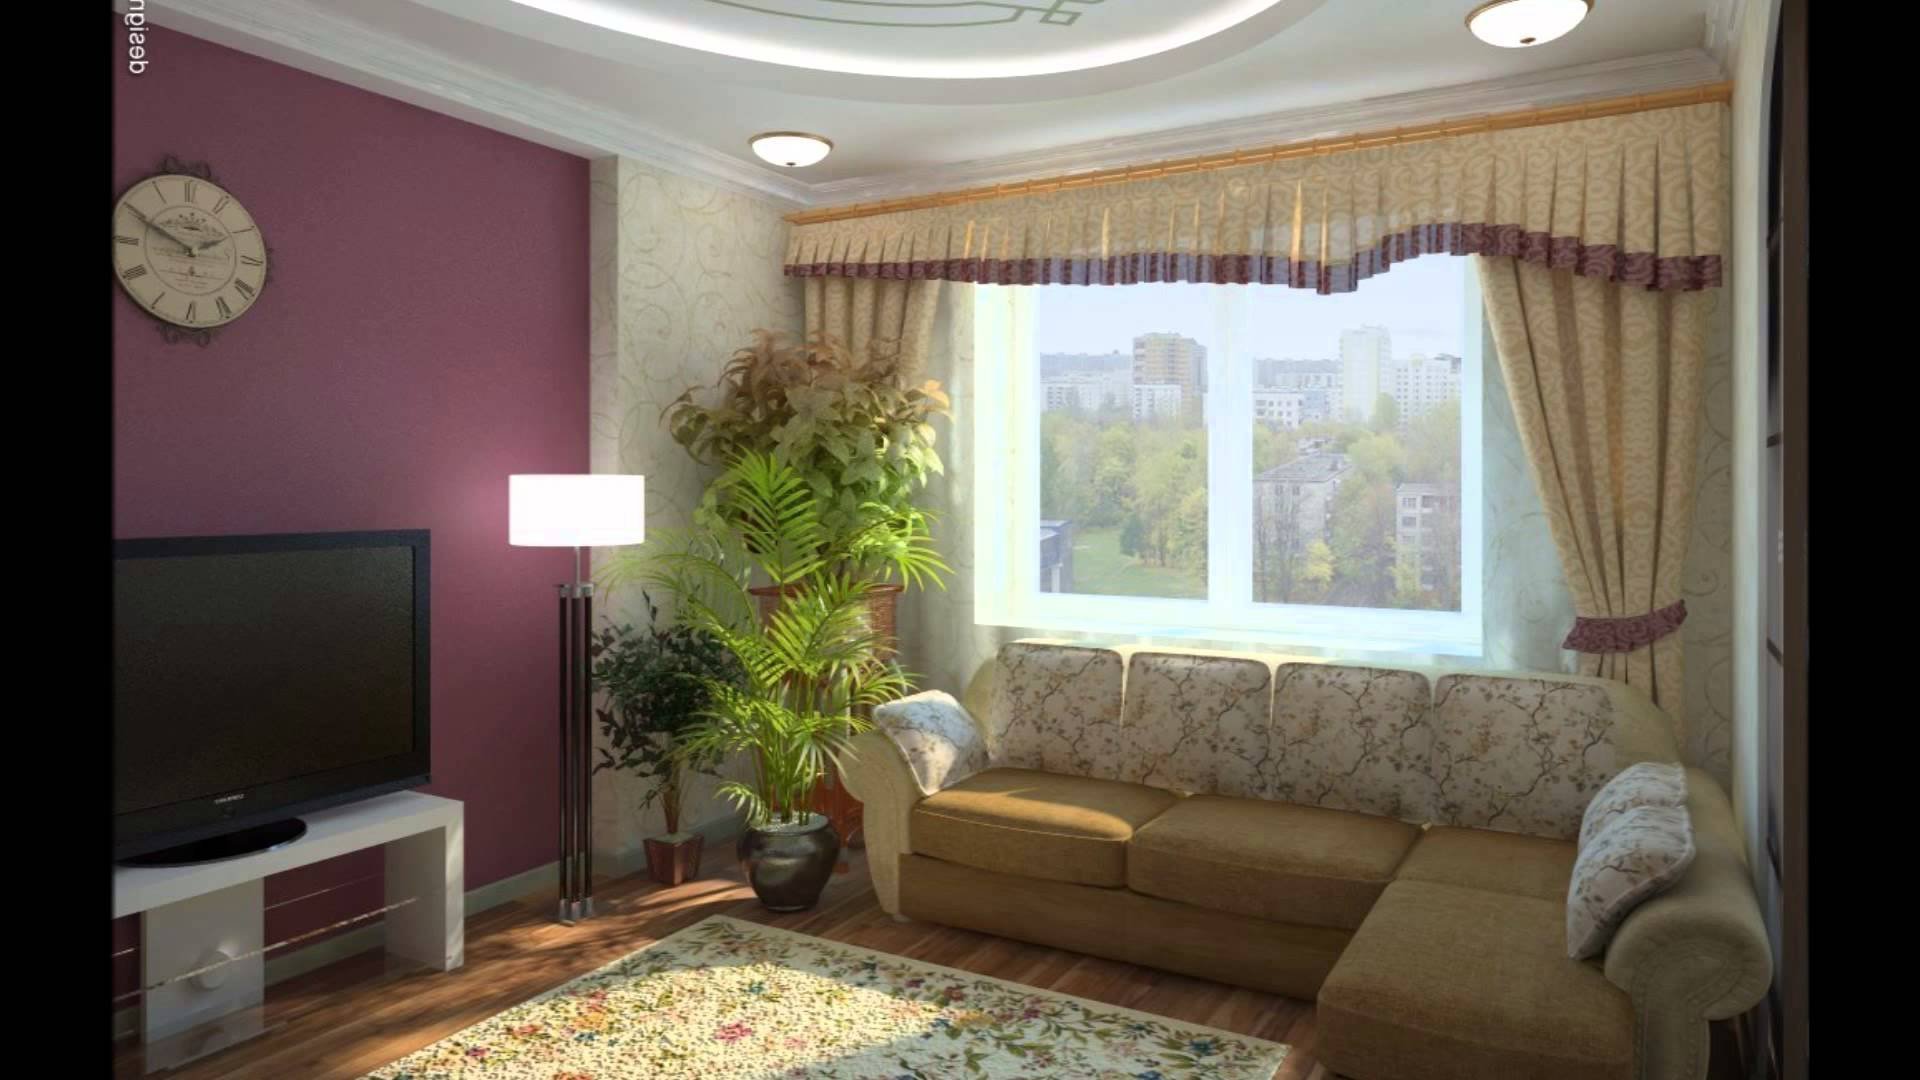 Дизайн интерьера зала в частном доме в современном стиле фото